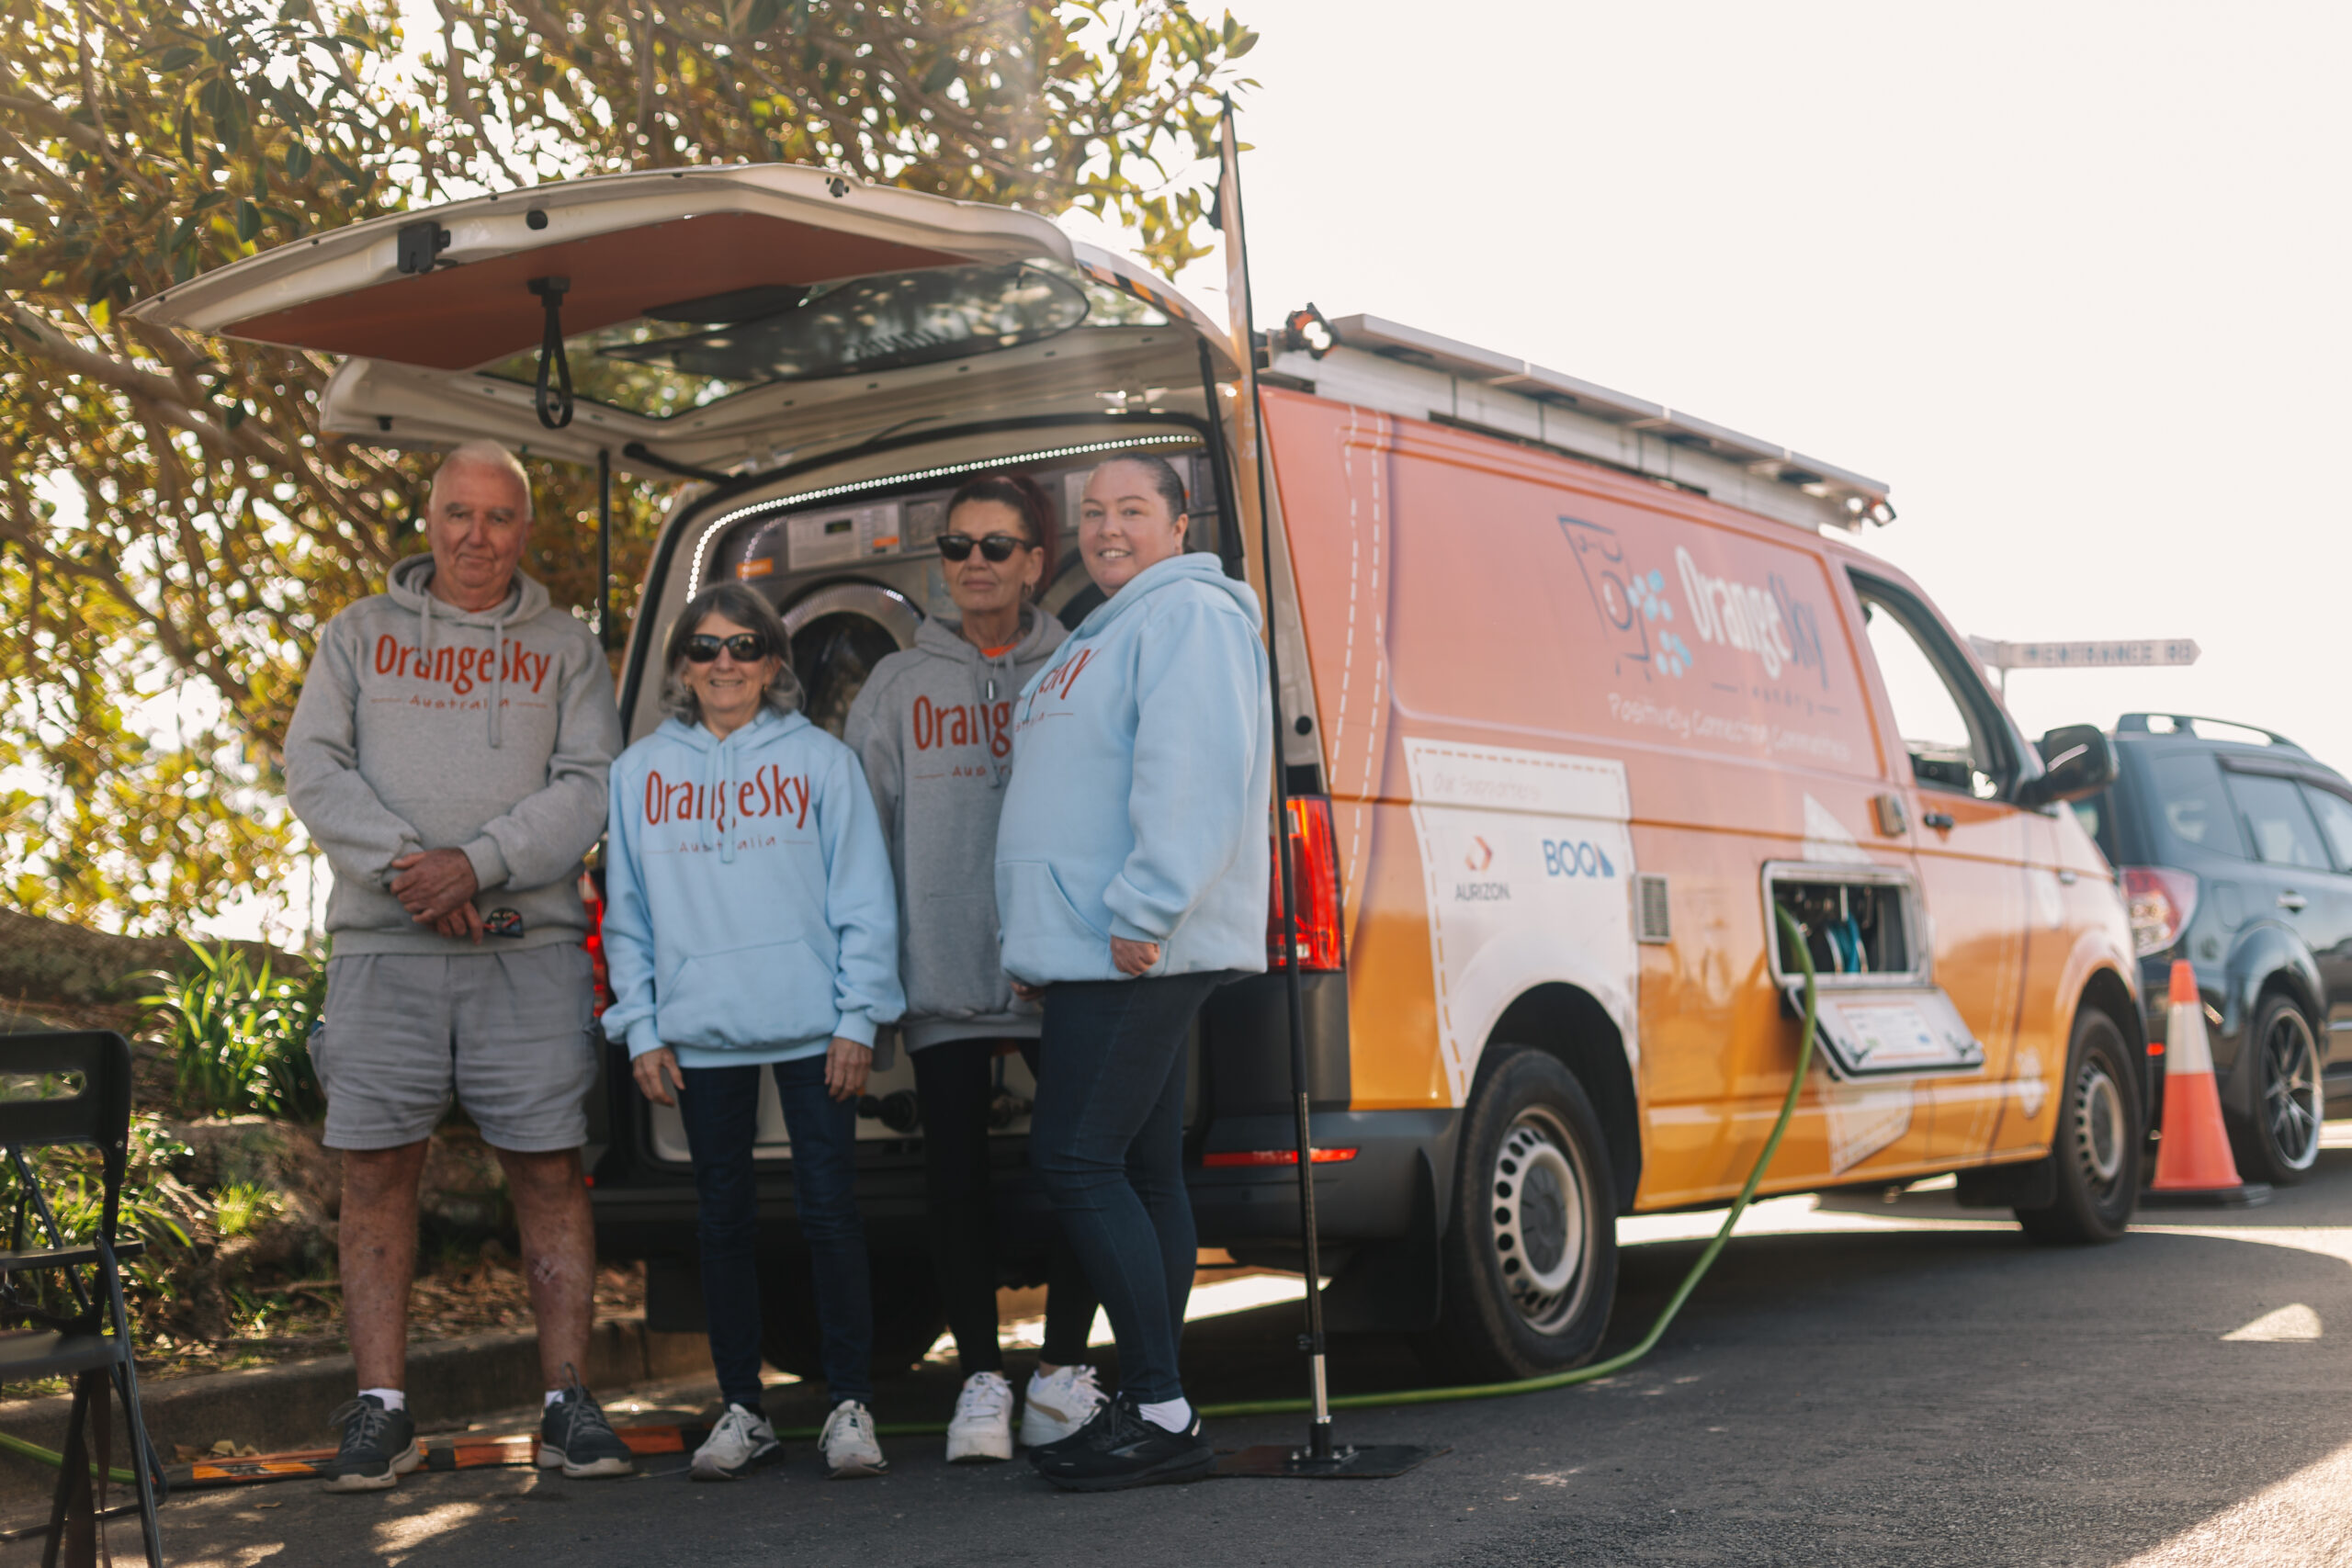 Amanda standing with other Orange Sky Volunteers after being homeless in front of Orange Sky van